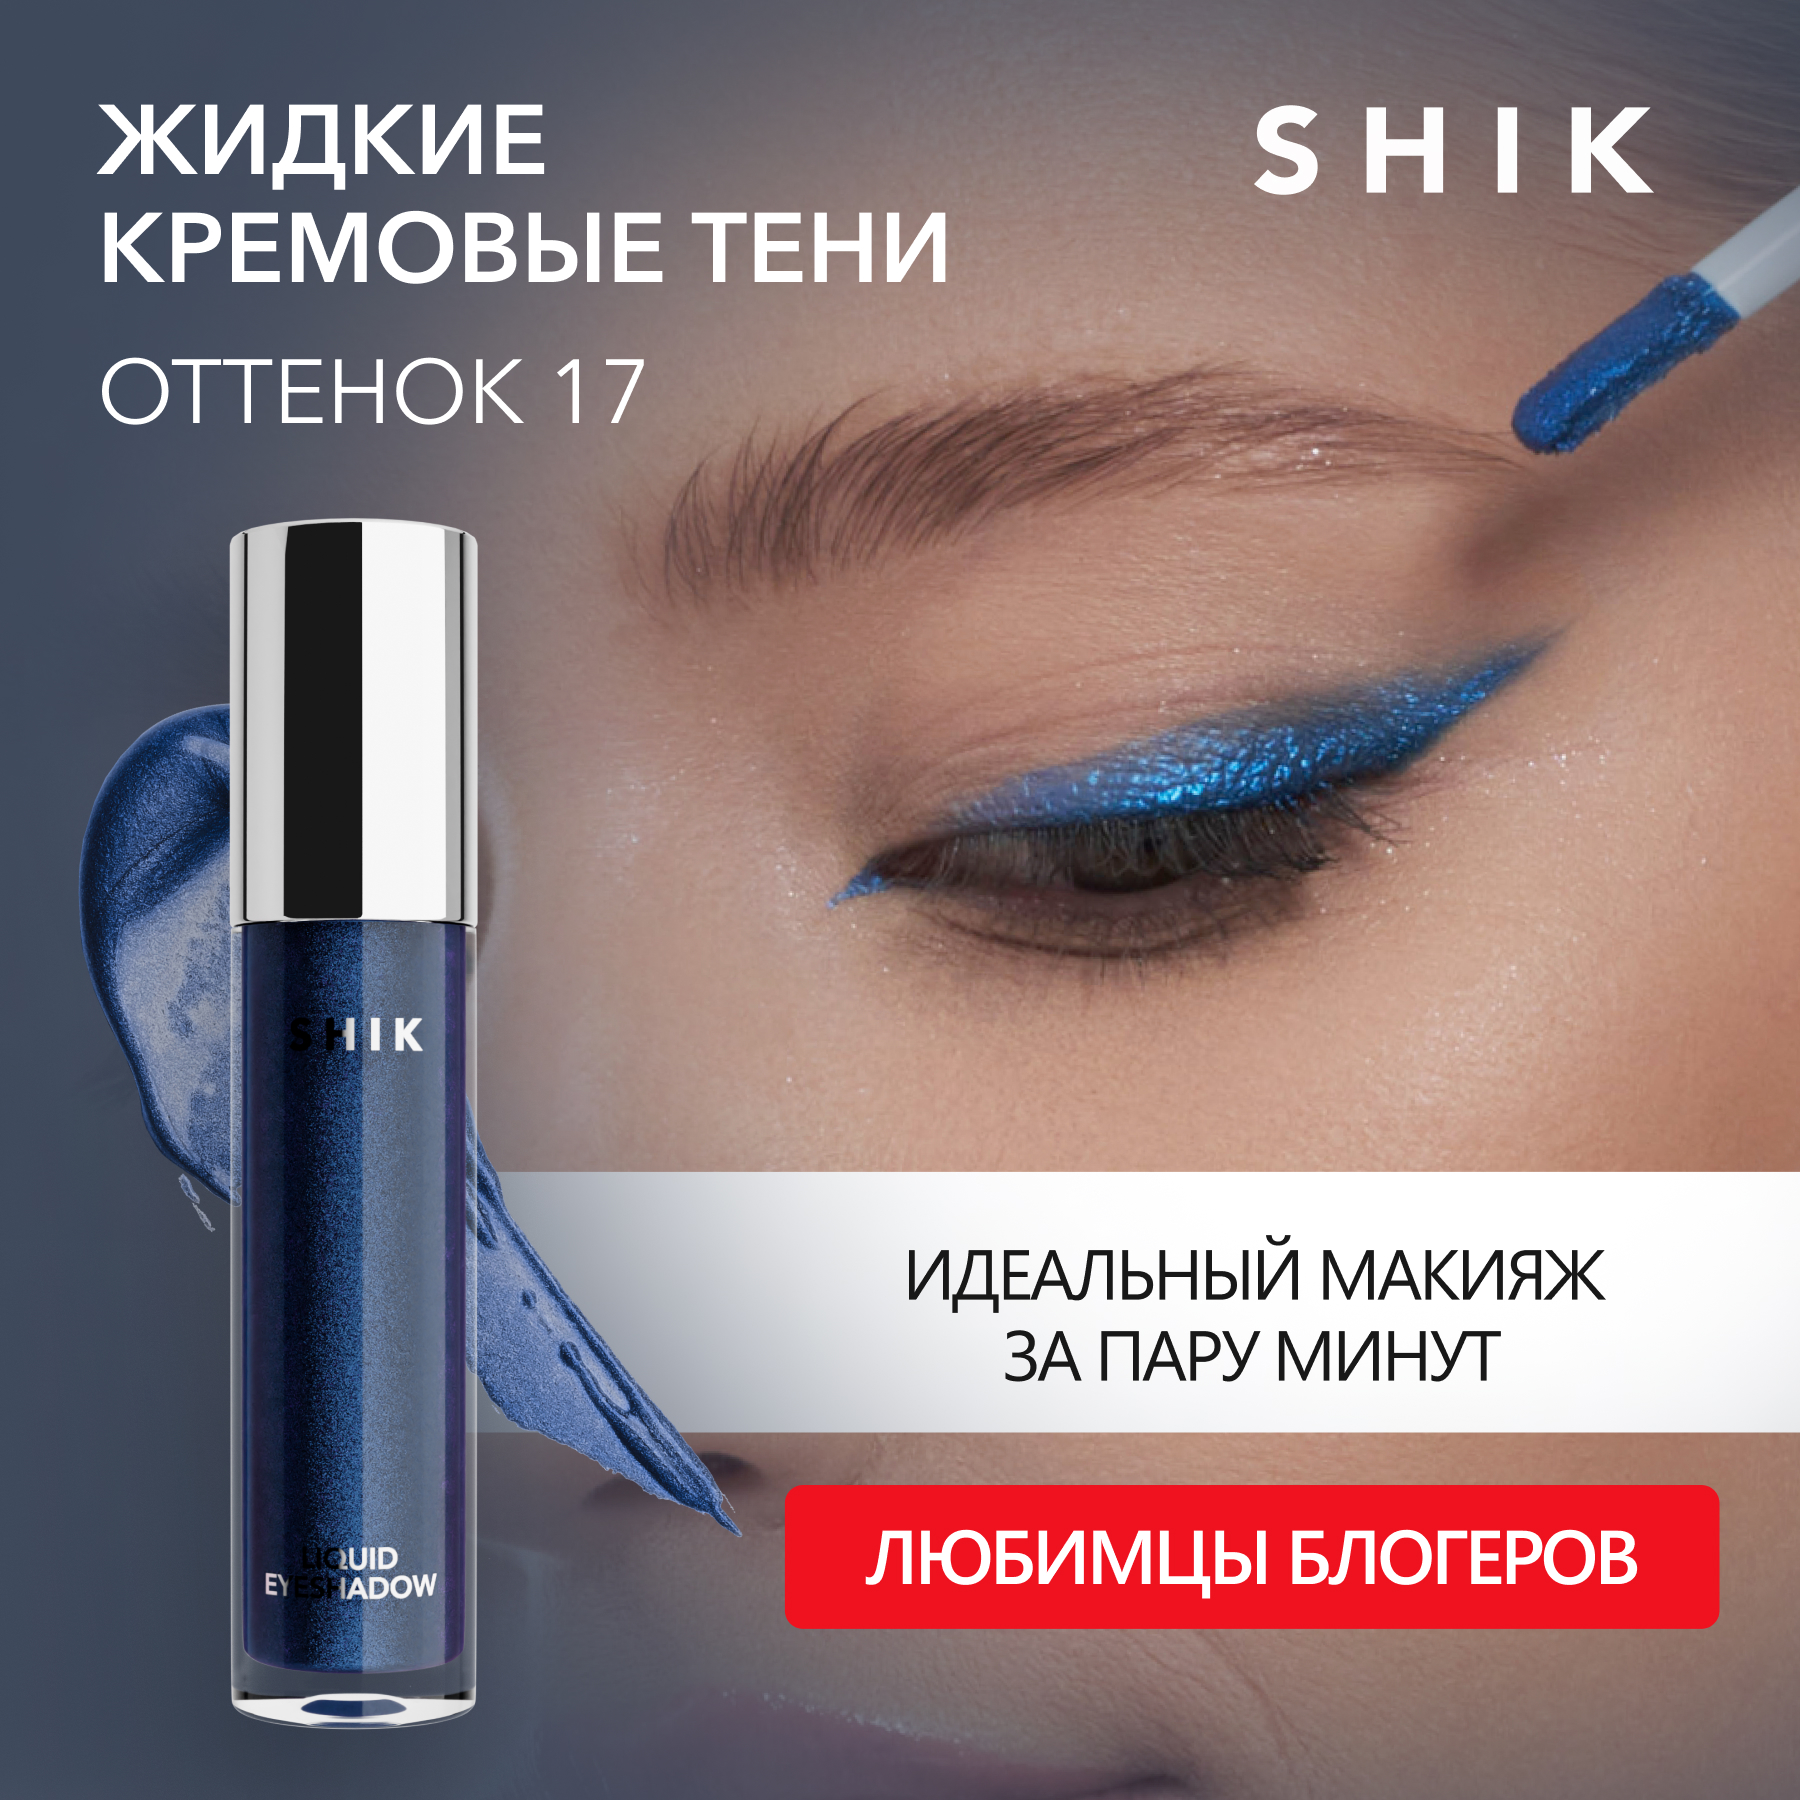 Тени для век Shik жидкие кремовые стойкие с сиянием и блестками оттенок 17 Liquid Eyeshado